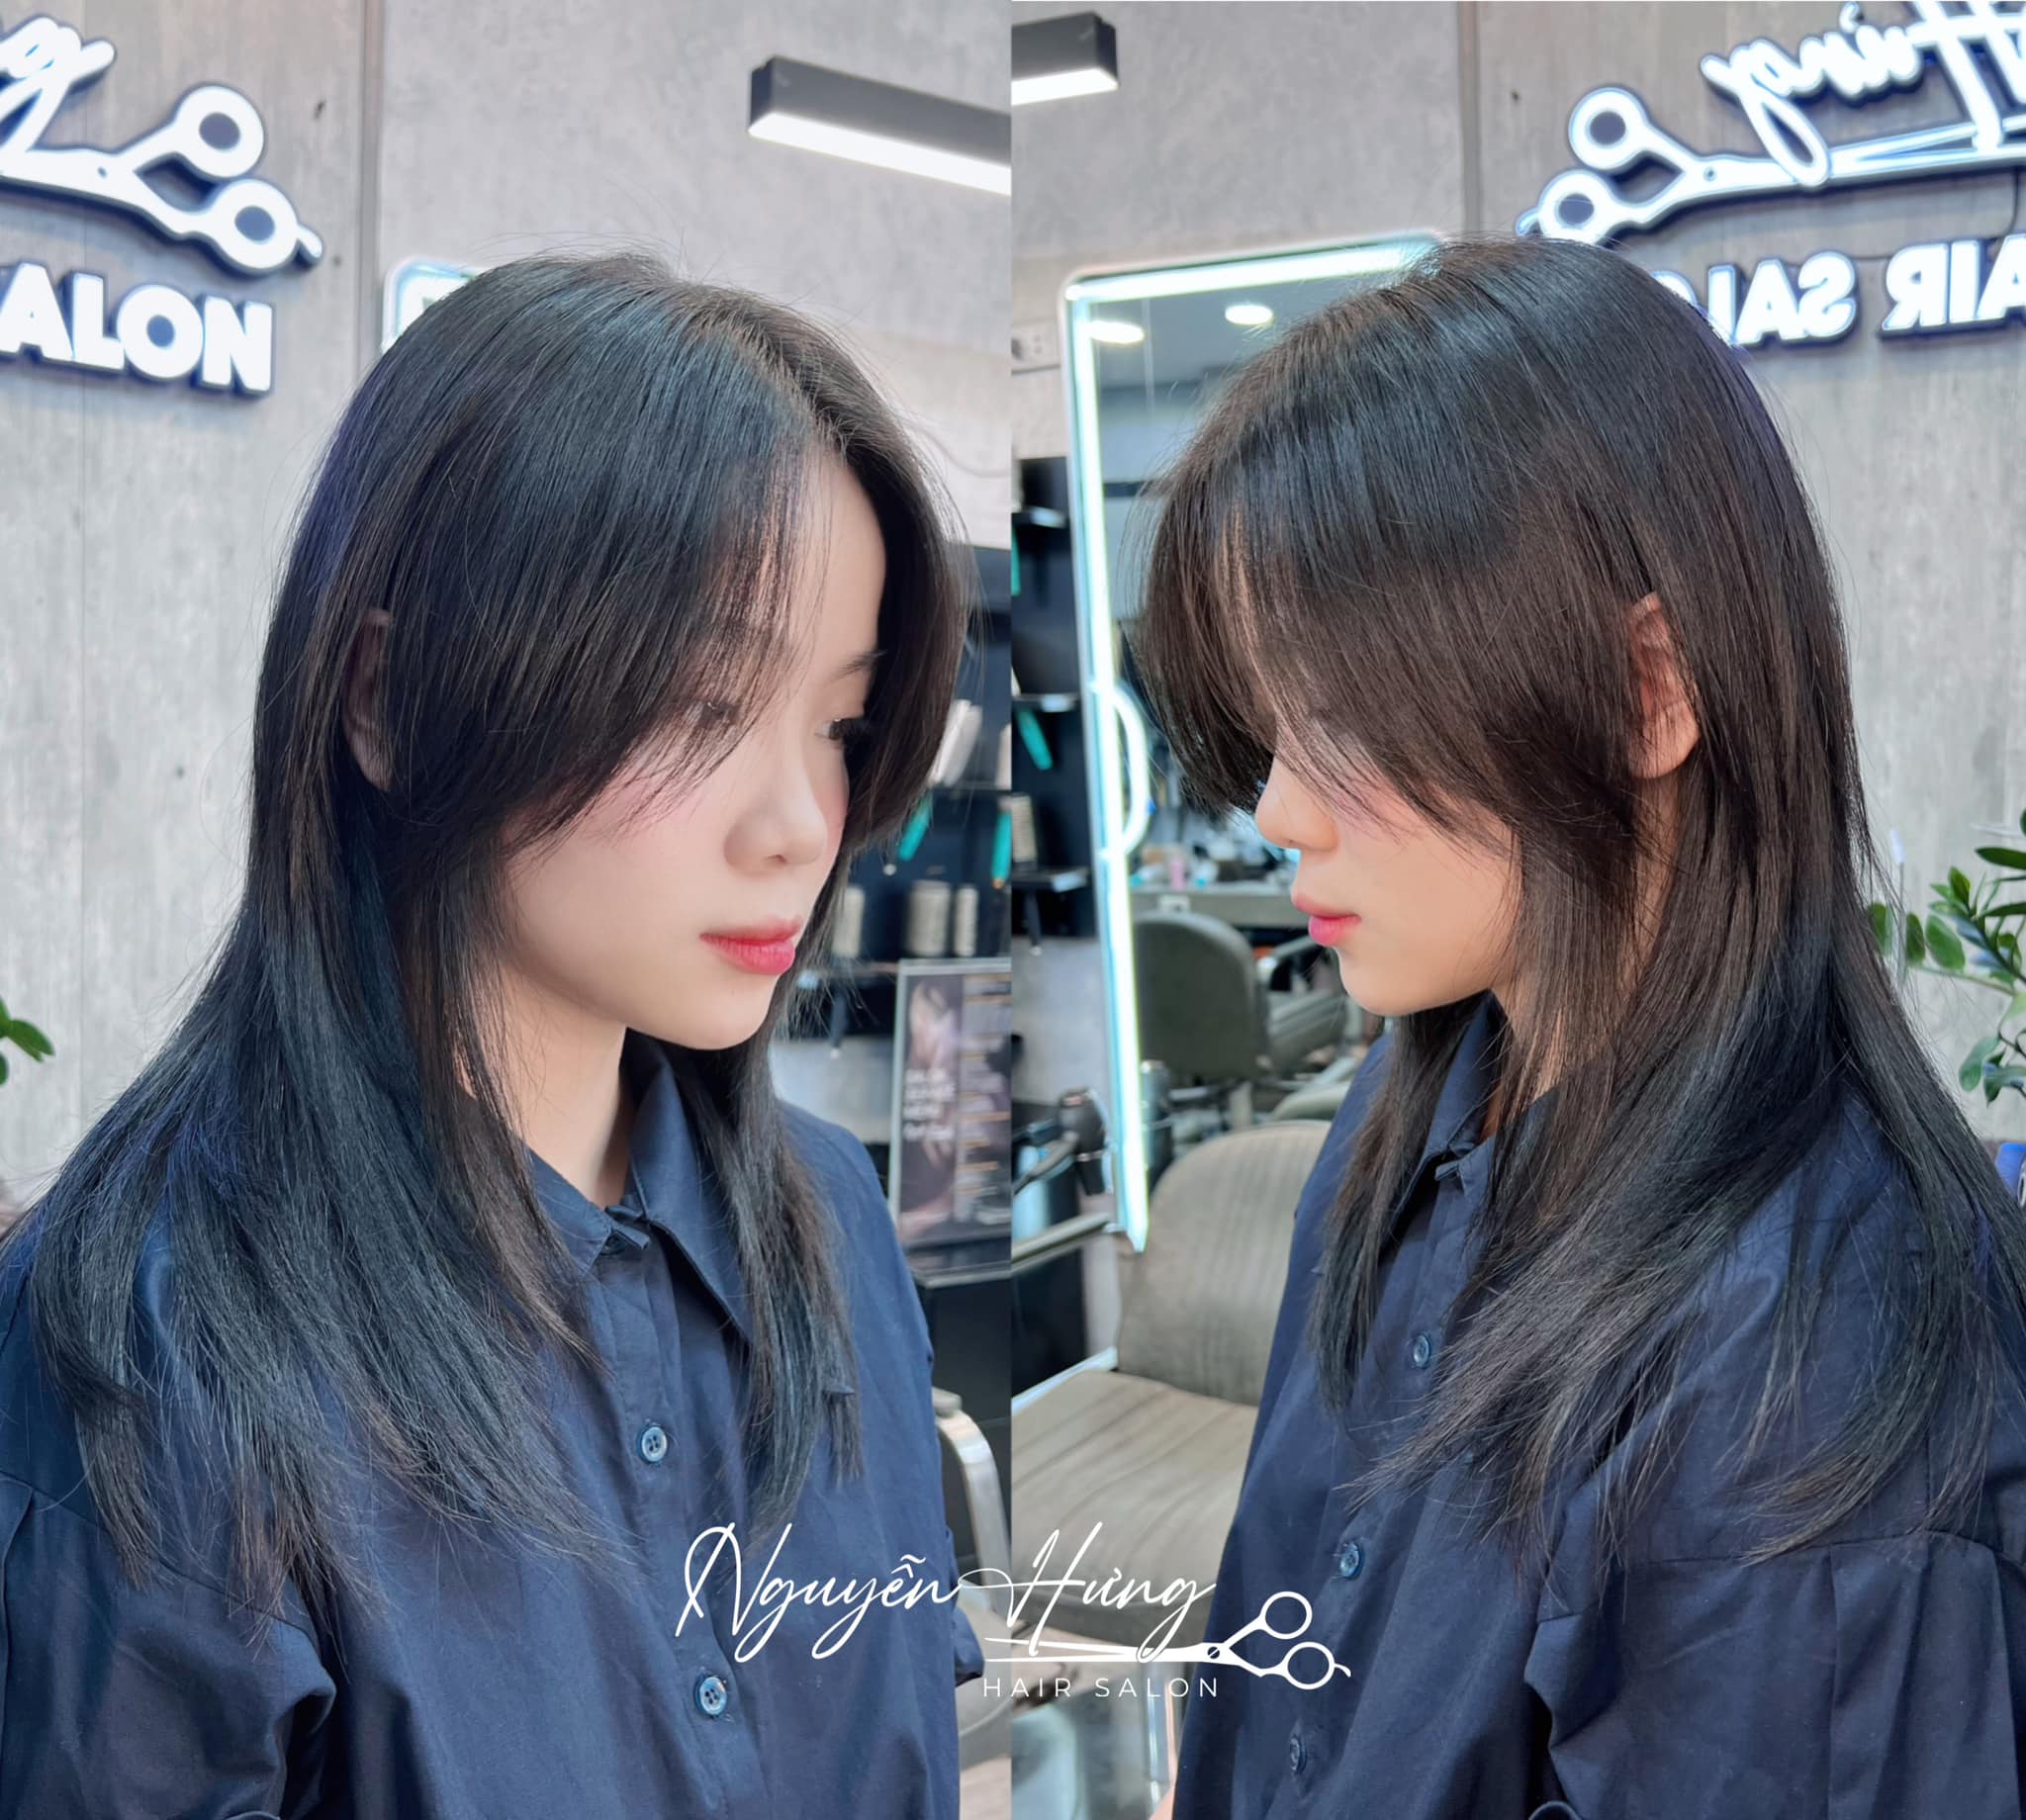 Nguyễn Hưng Hair Salon ảnh 1